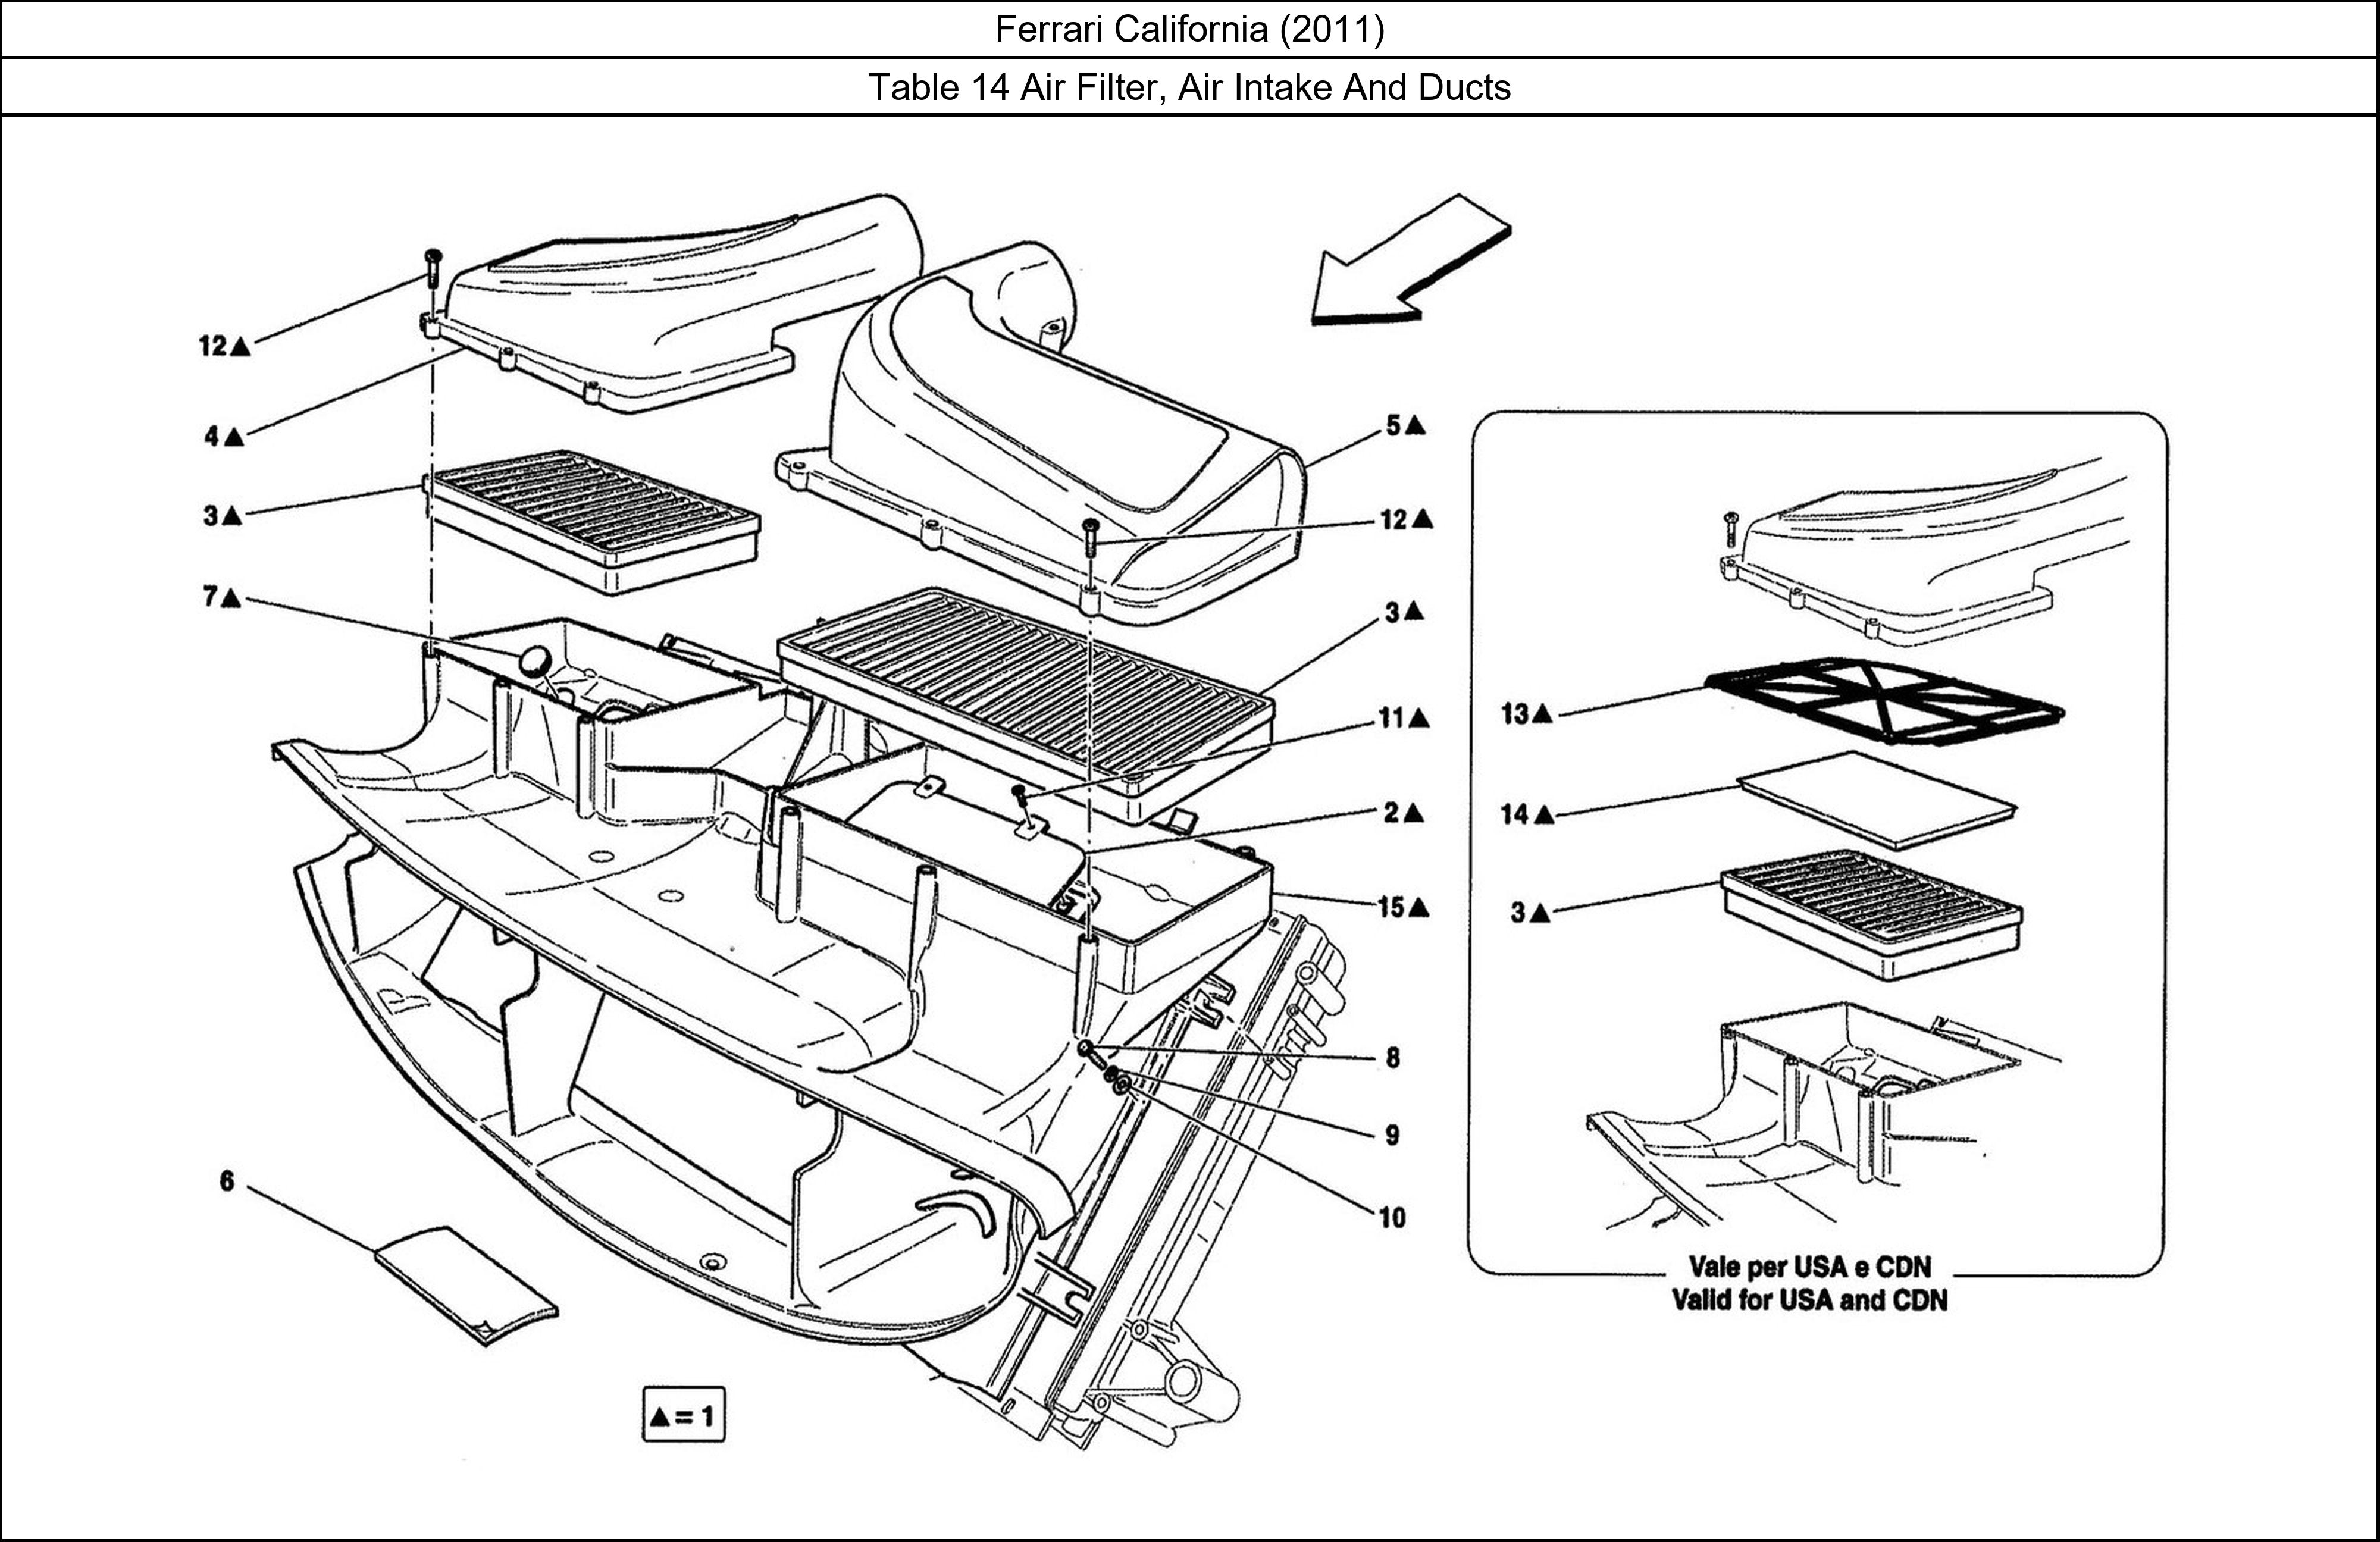 Ferrari Parts Ferrari California (2011) Table 14 Air Filter, Air Intake And Ducts